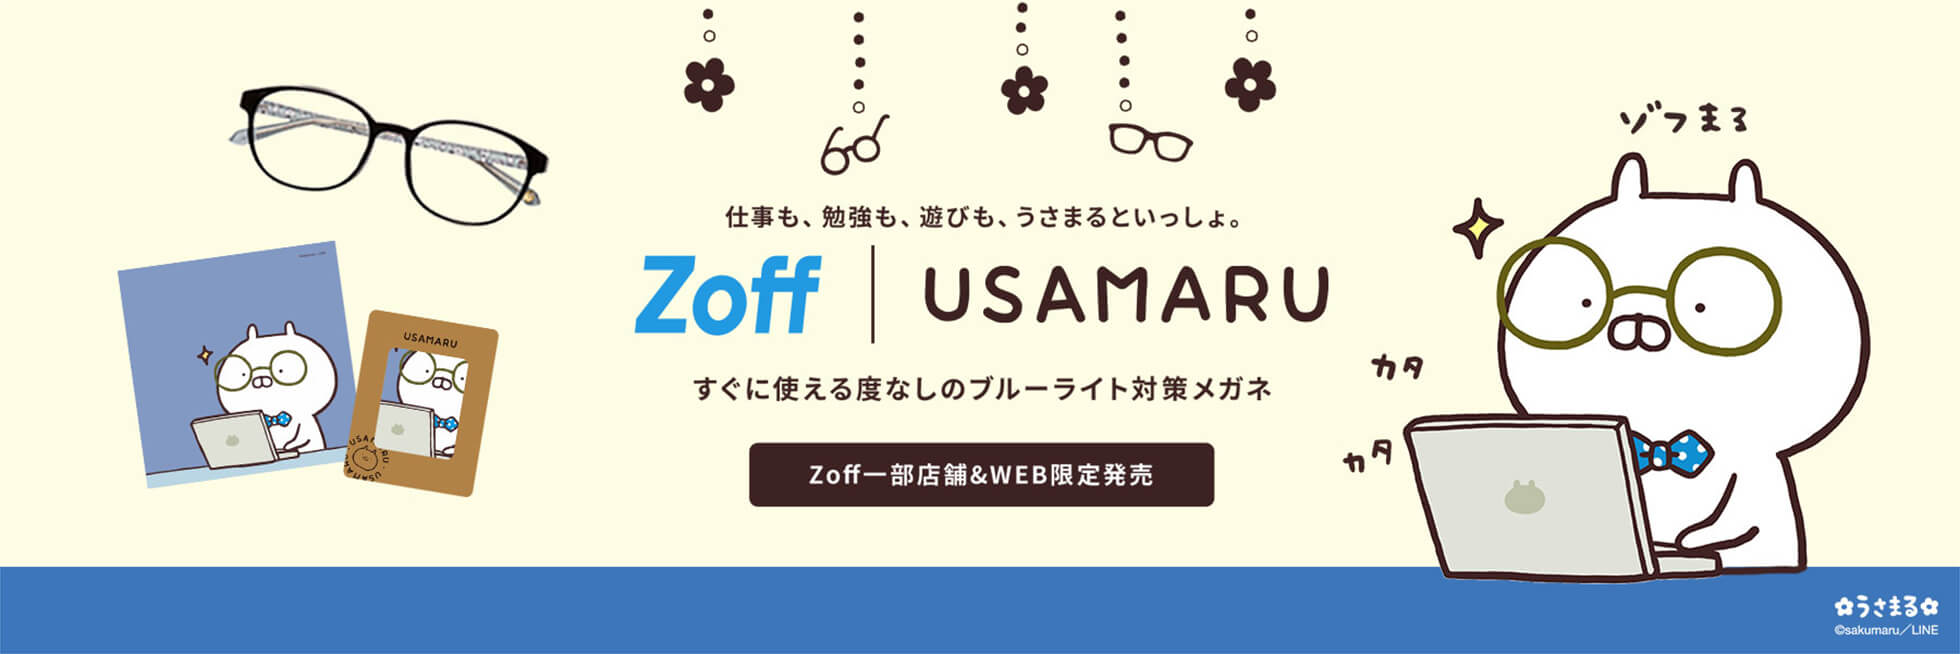 仕事も、勉強も、遊びも、うさまるといっしょ。 Zoff USAMARU すぐに使える度なしのブルーライト対策メガネ Zoff一部店舗&WEB限定発売 うさまる ©sakumaru／LINE